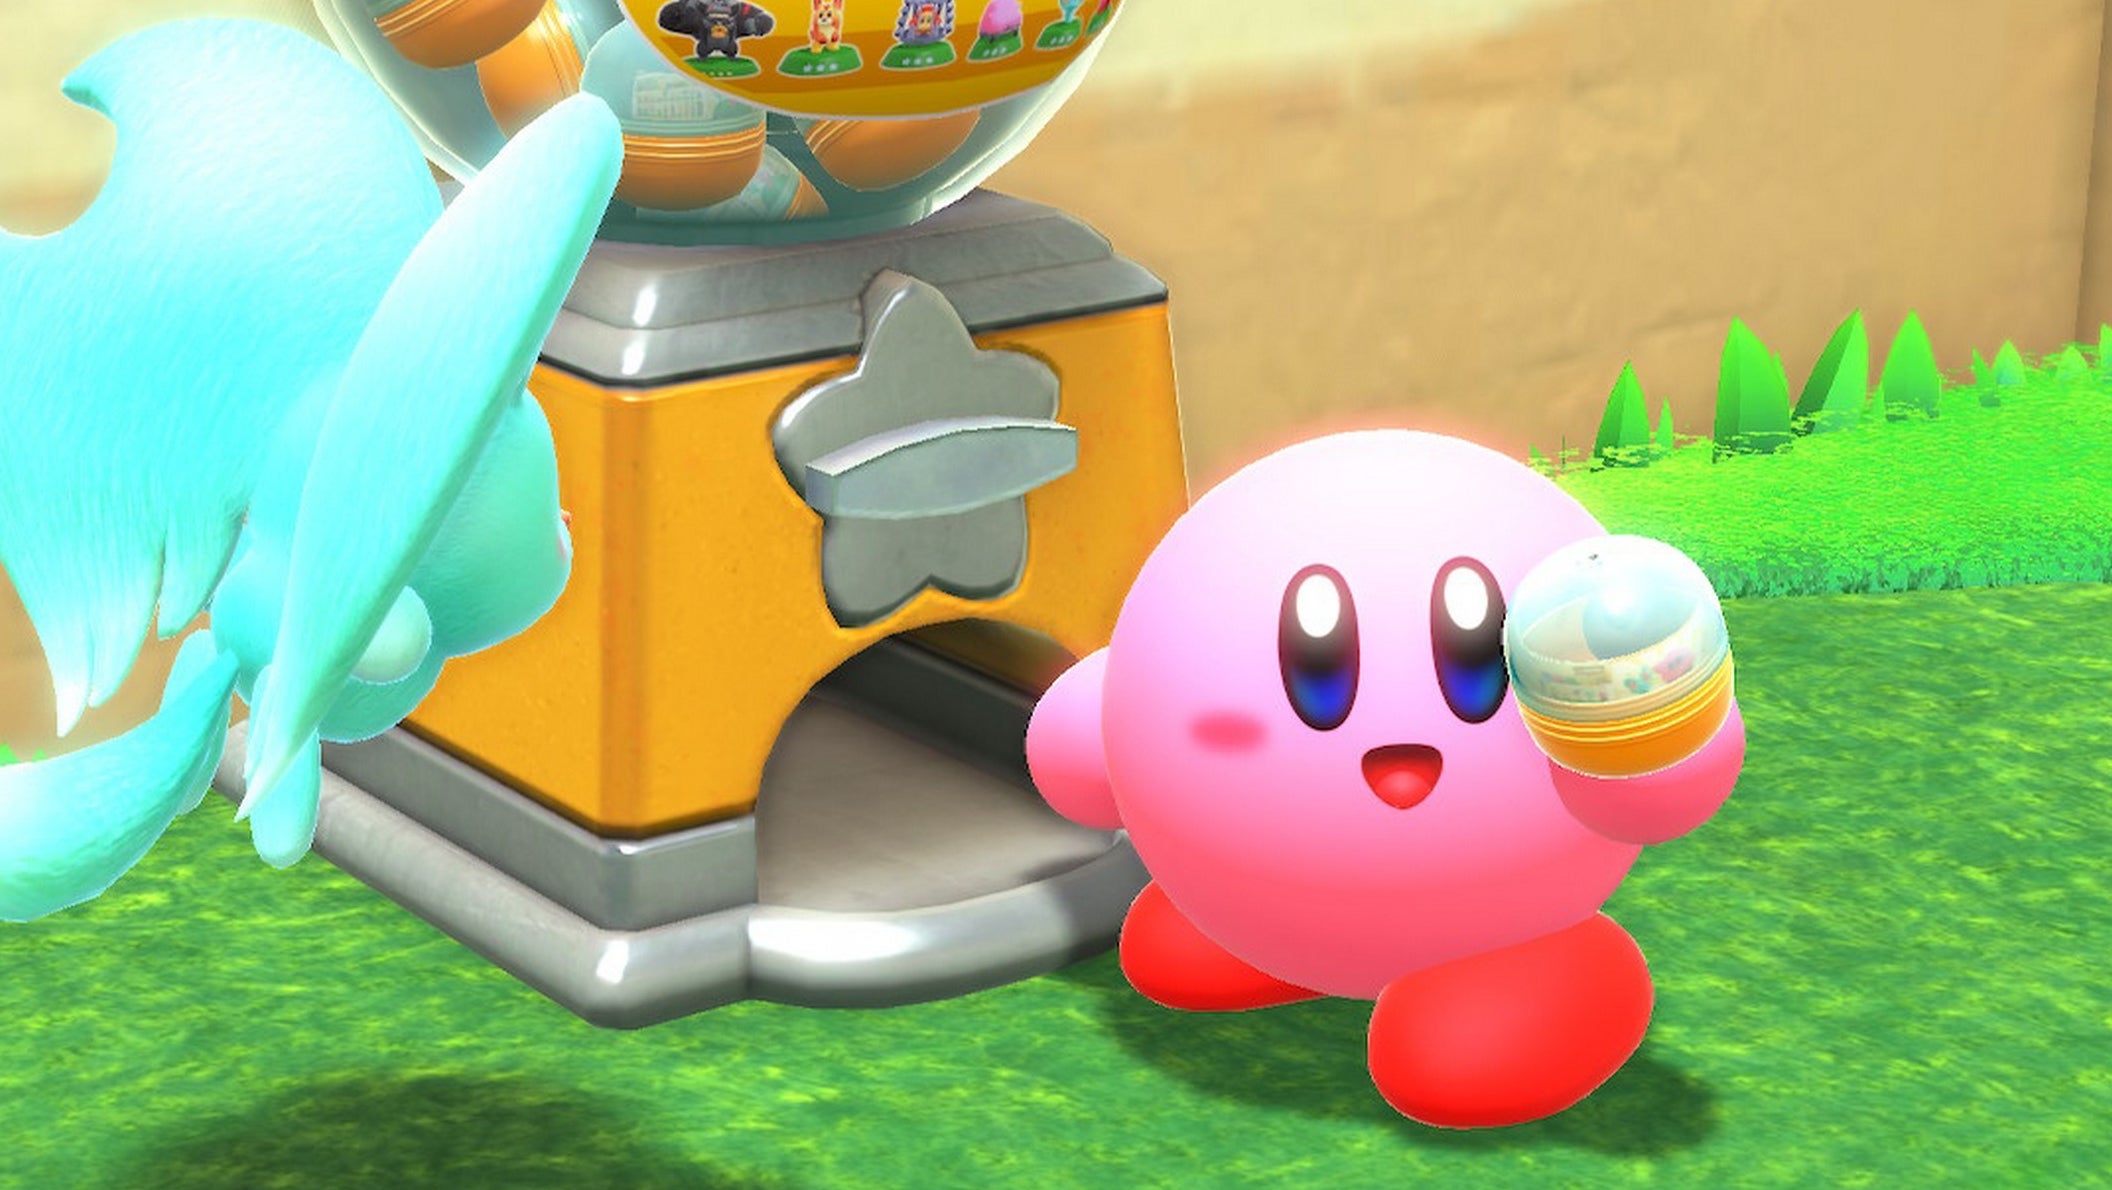 Immagine di Kirby e la Terra Perduta splendido? Nintendo considerava Kirby troppo rotondo per un platform 3D